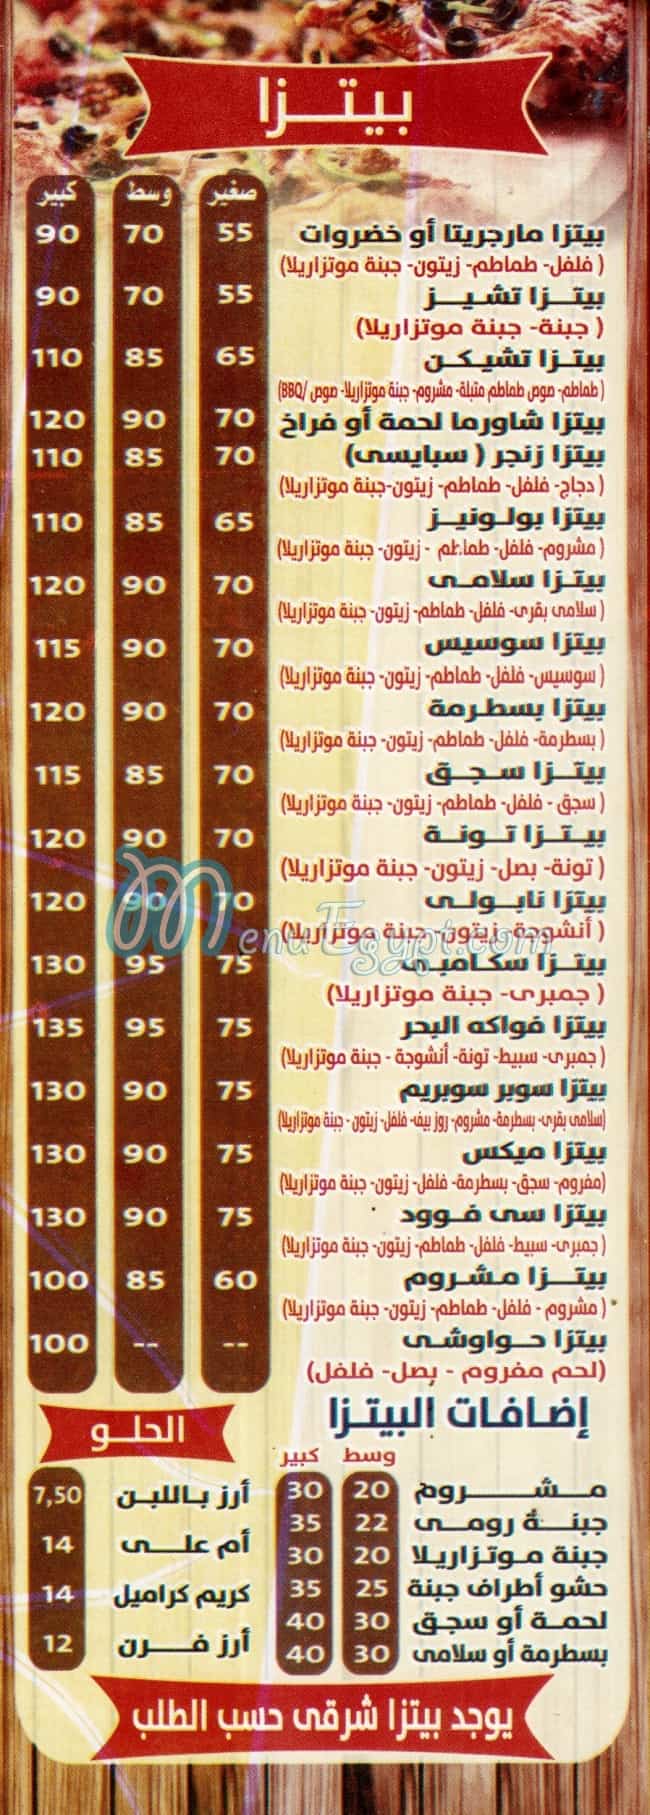 EL SHABRAWY Khatam El Morsaleen menu